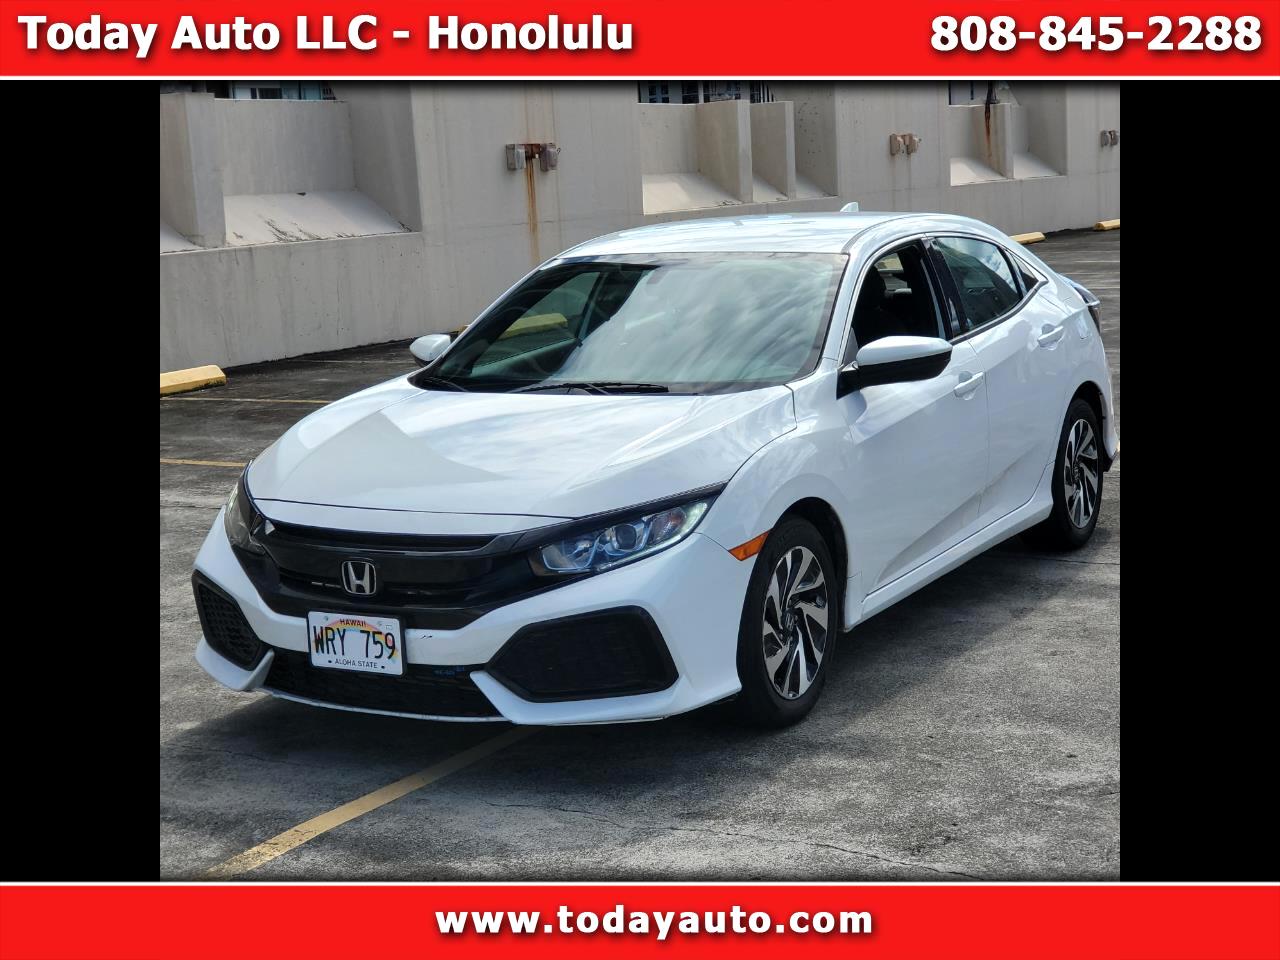 Honda Civic Hatchback LX CVT 2017